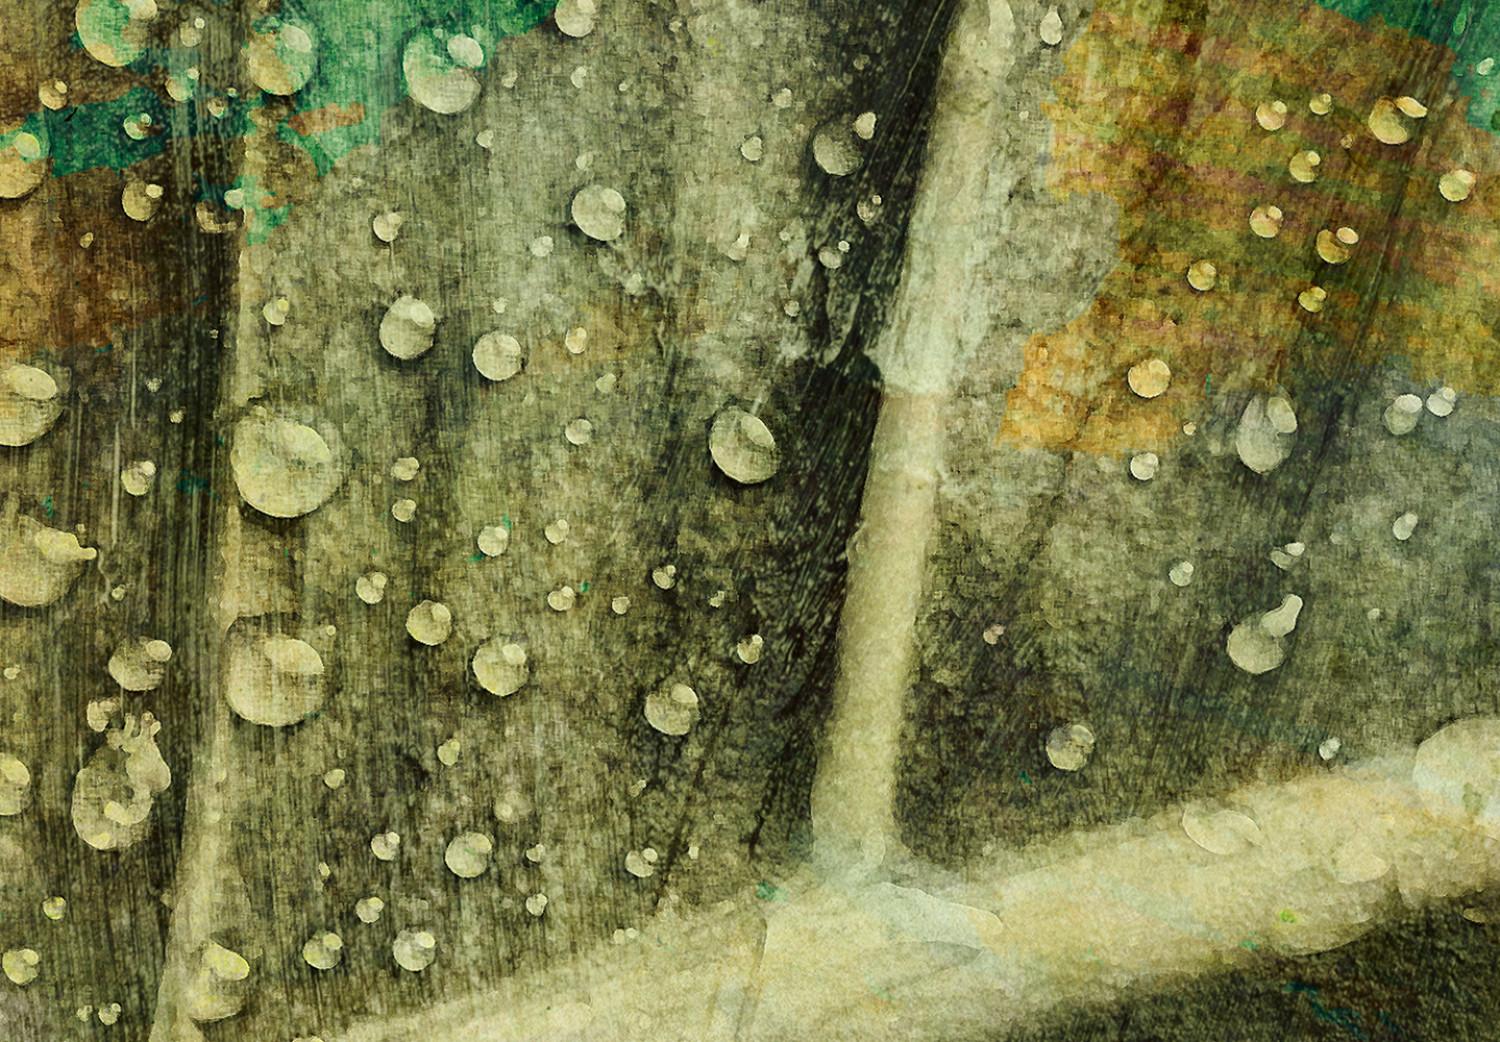 Cuadro decorativo Gotas de lluvia sobre una hoja - motivo botánico en color verde